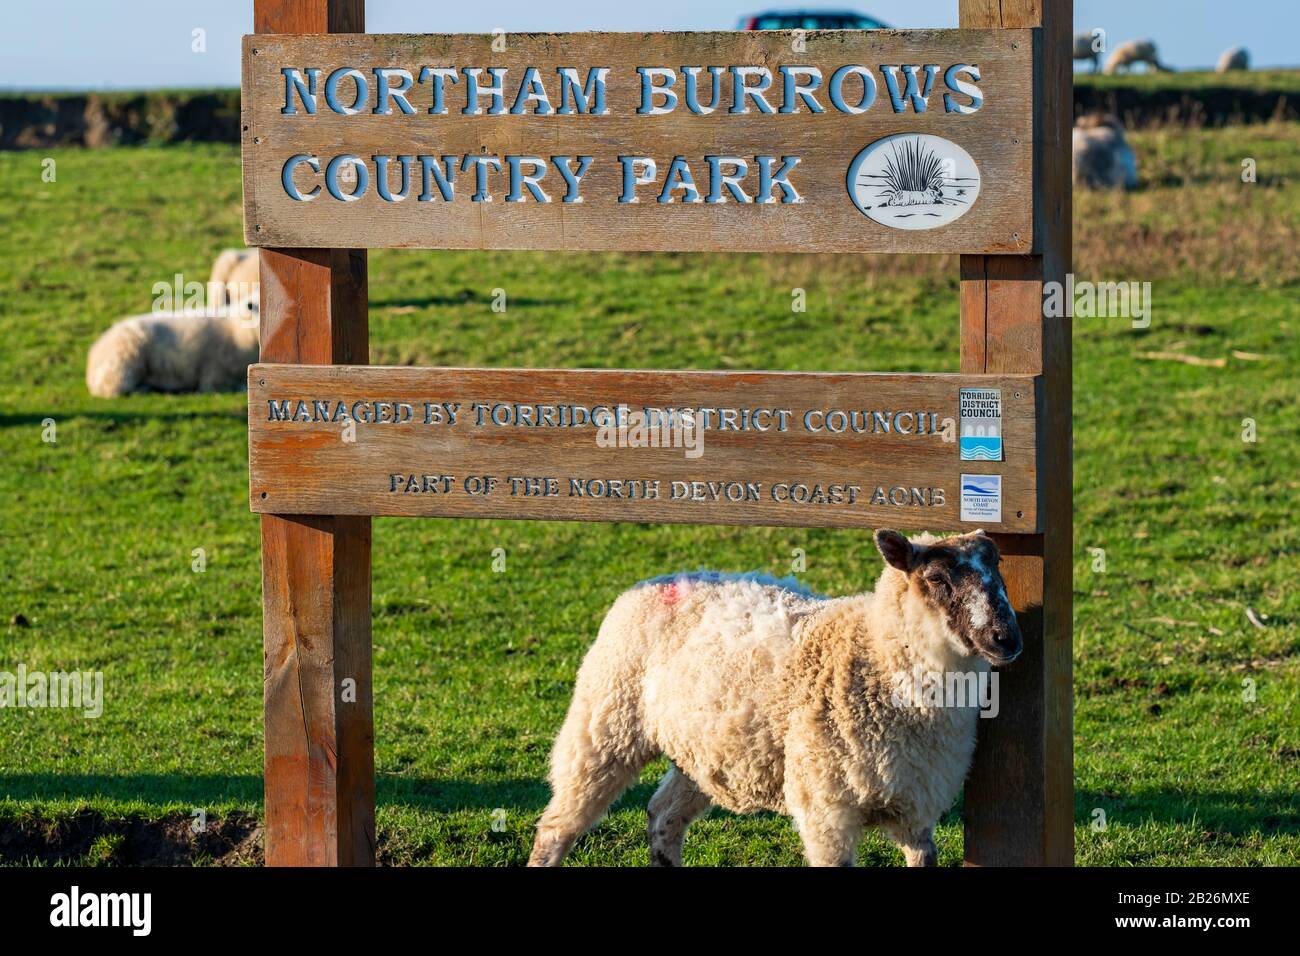 Schafe, die neben dem Landesschild des Northam Burrows Country Park stehen, mit grünem Gras in North Devon, South West, Großbritannien Stockfoto